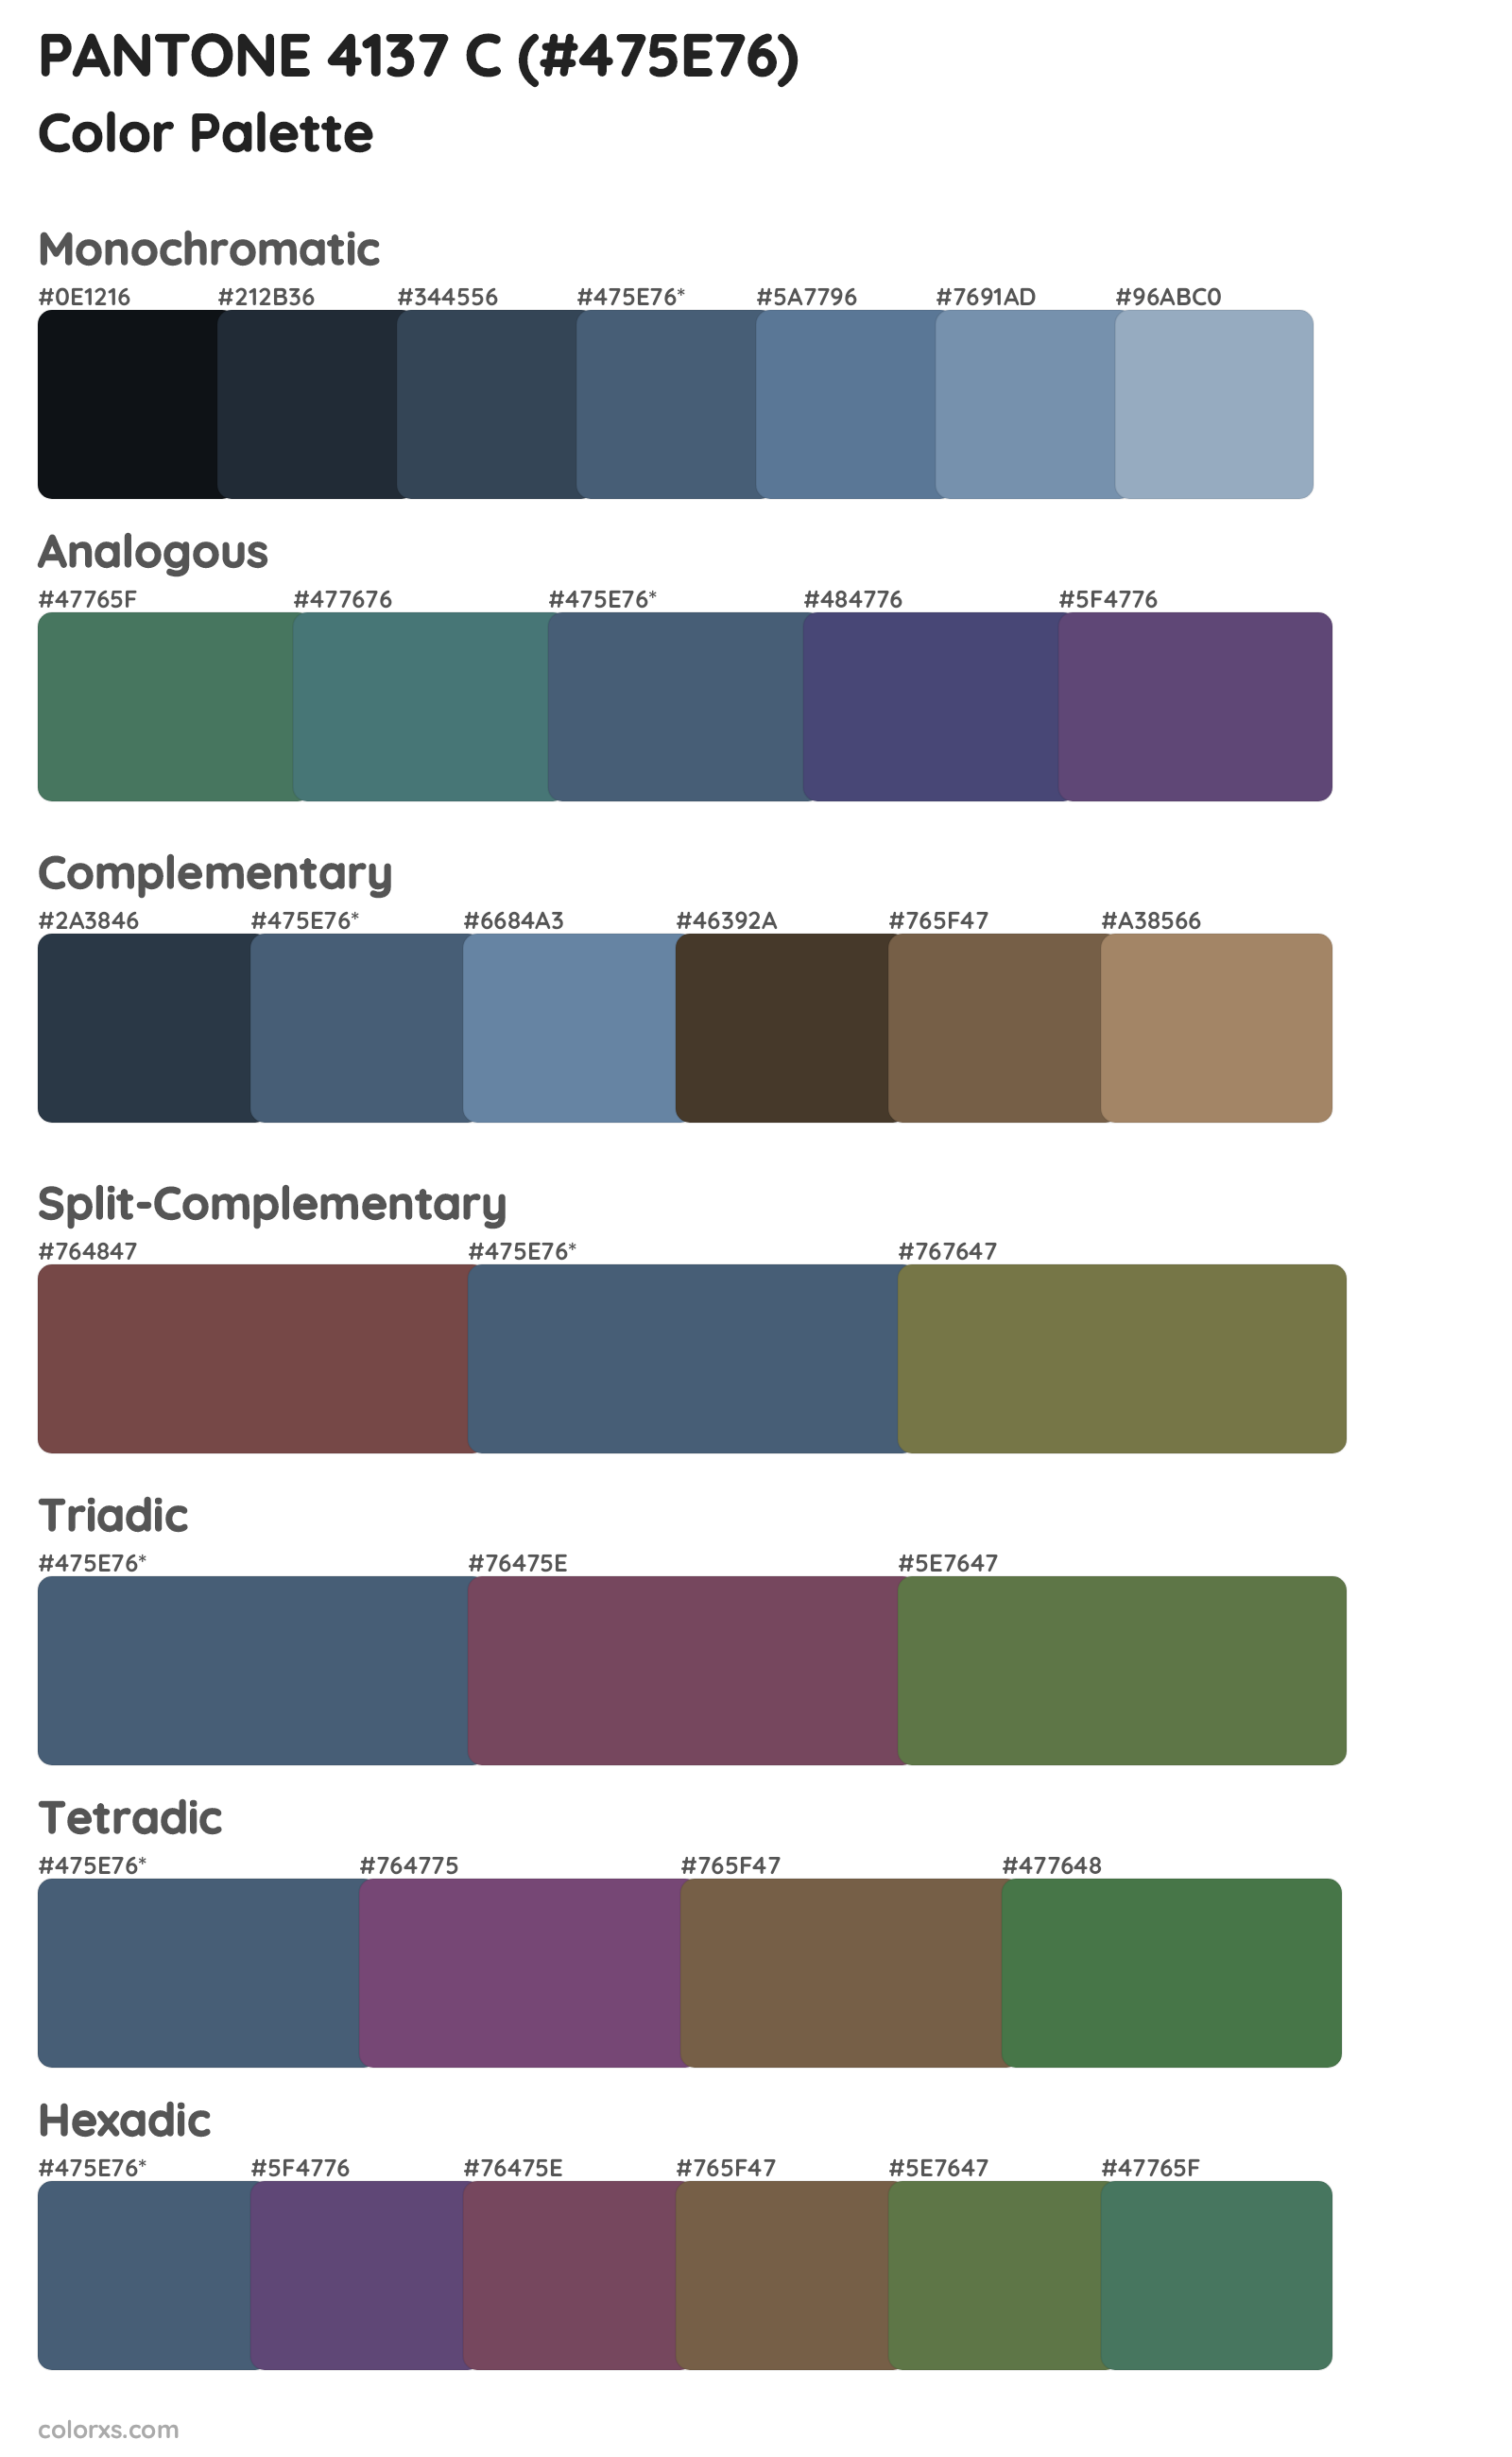 PANTONE 4137 C Color Scheme Palettes